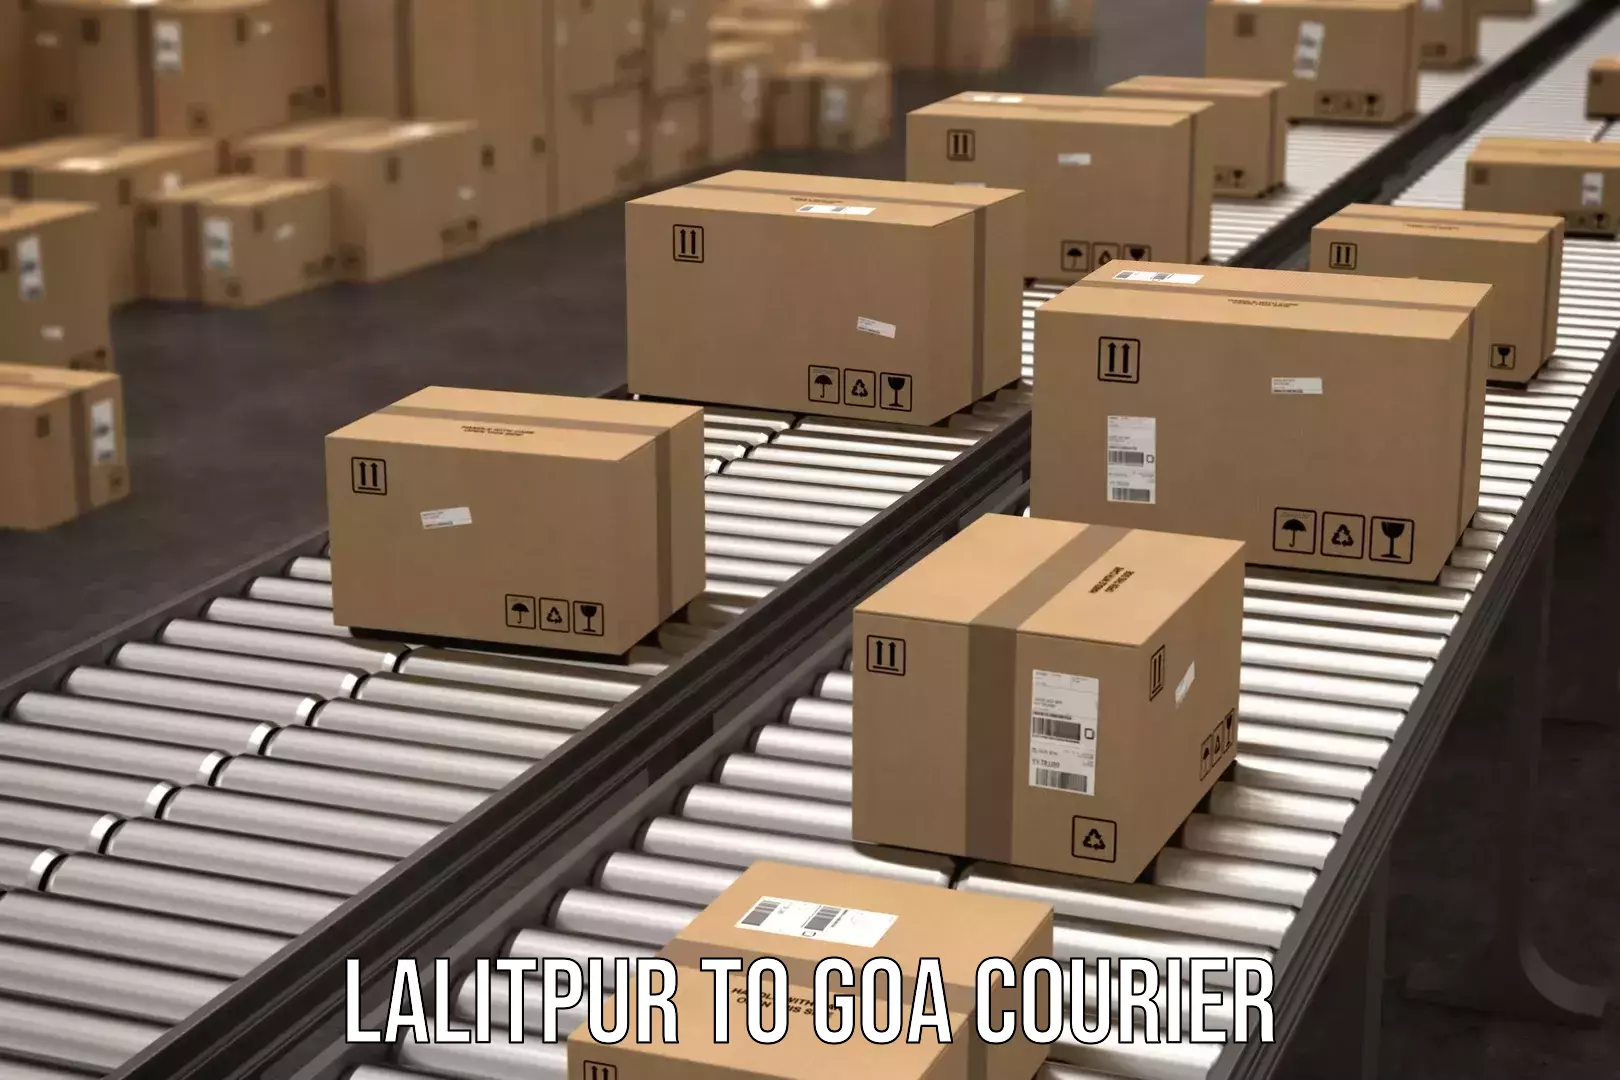 Courier service comparison Lalitpur to South Goa